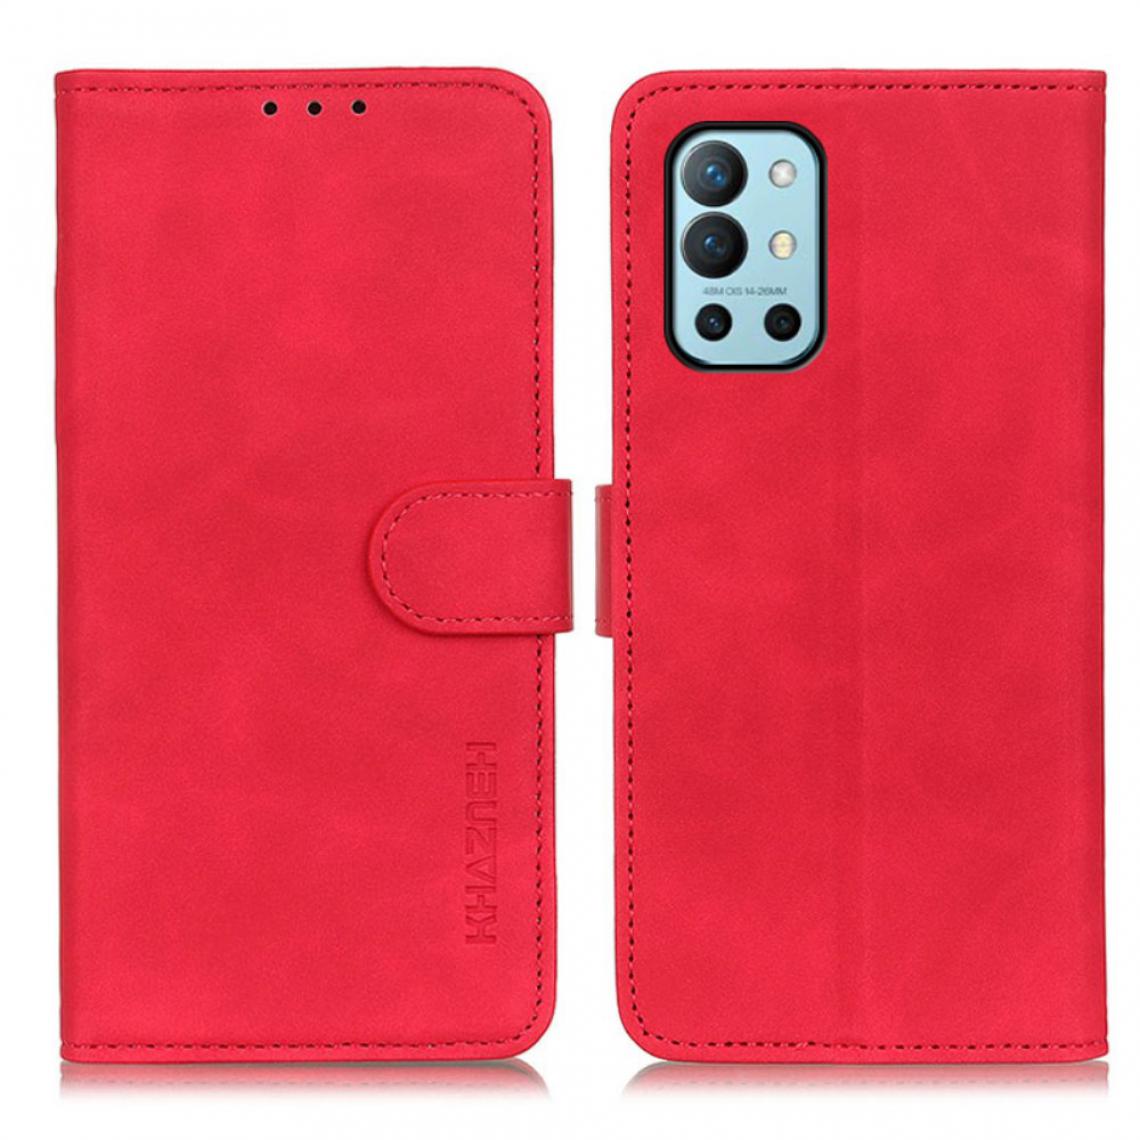 Other - Etui en PU Style rétro avec support rouge pour votre OnePlus 9R - Coque, étui smartphone